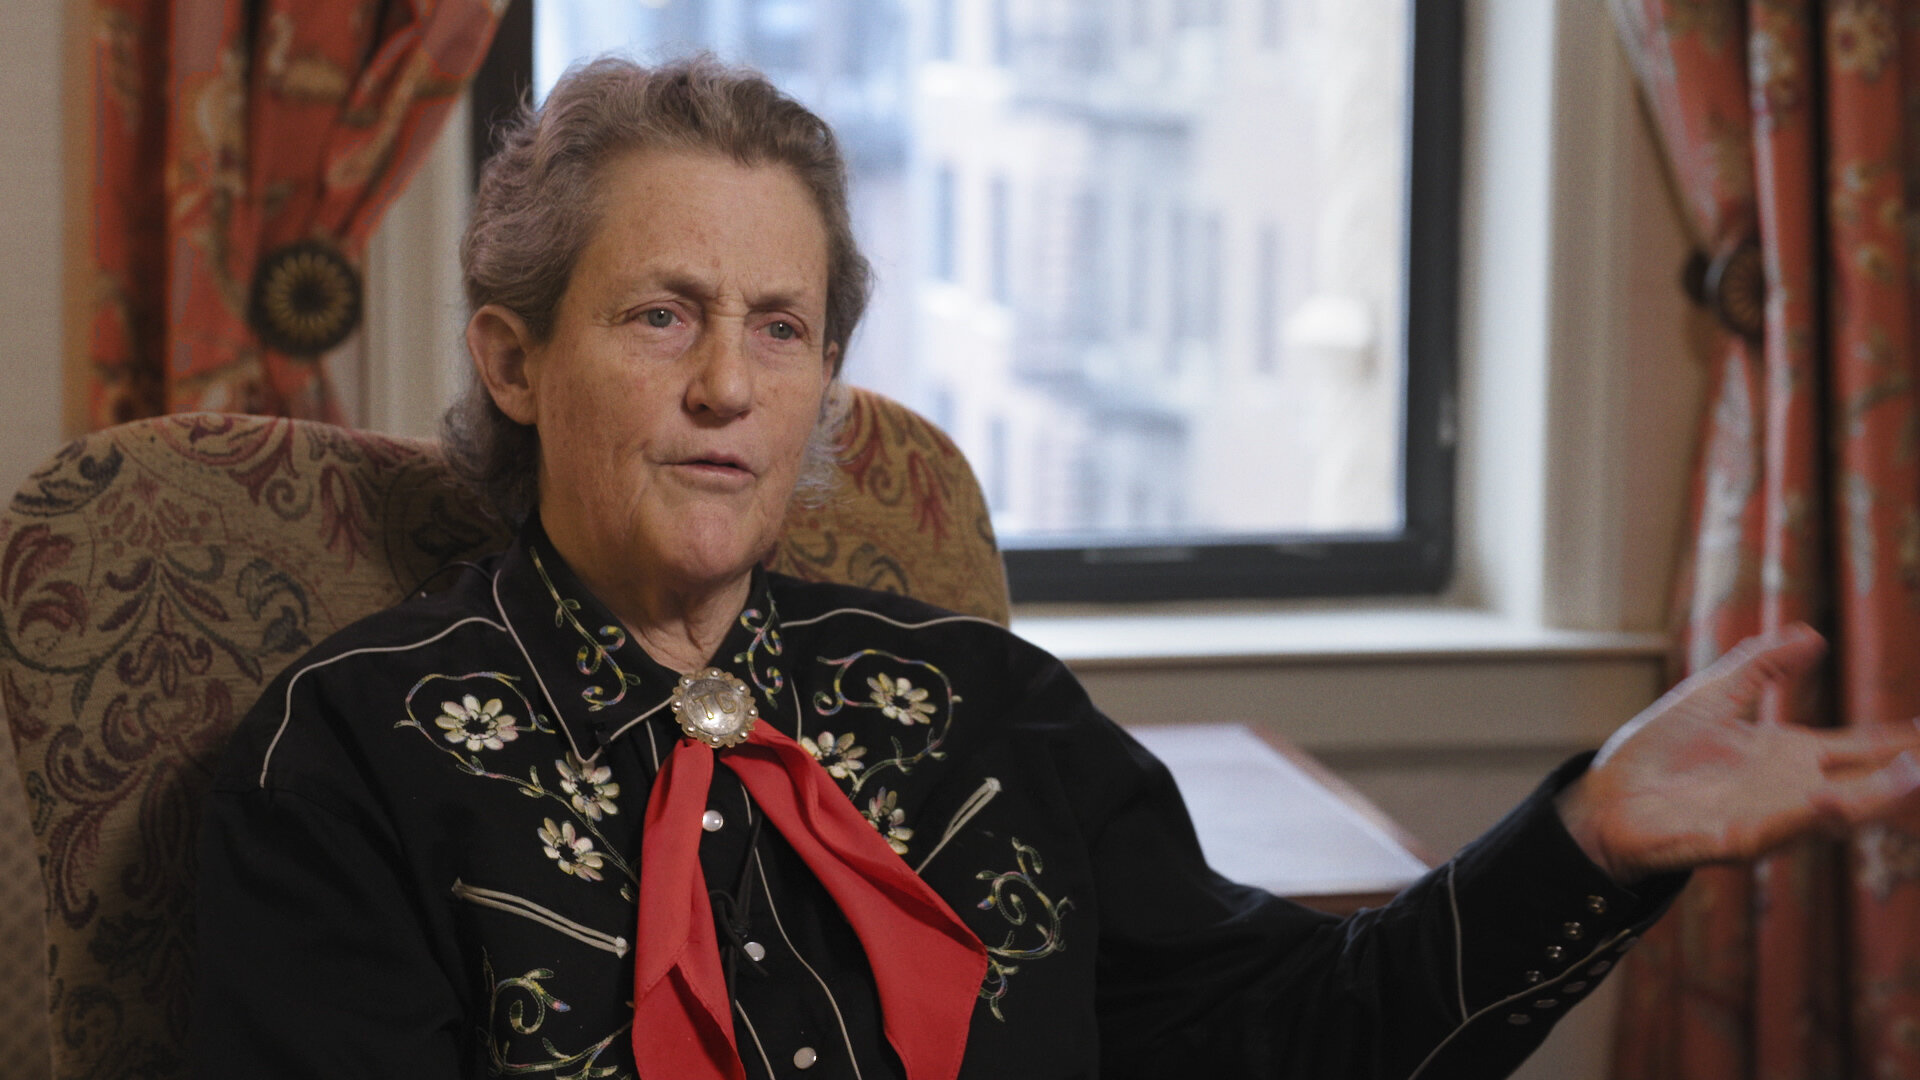 Cerveau_Temple Grandin.jpg